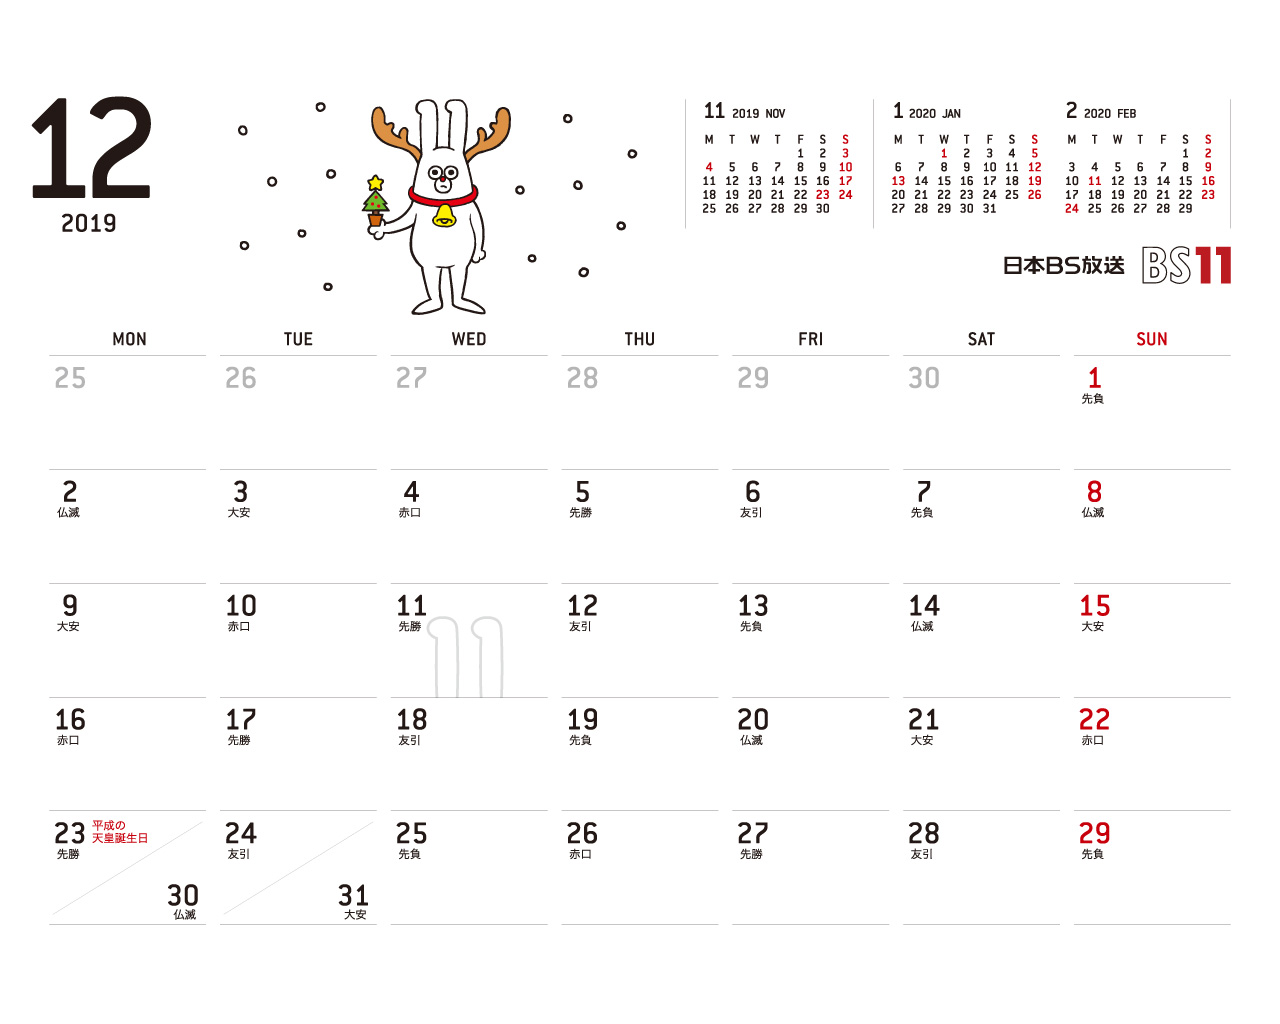 じゅういっちゃんのデジタルカレンダー2019年12月 Bs11 イレブン いつでも無料放送